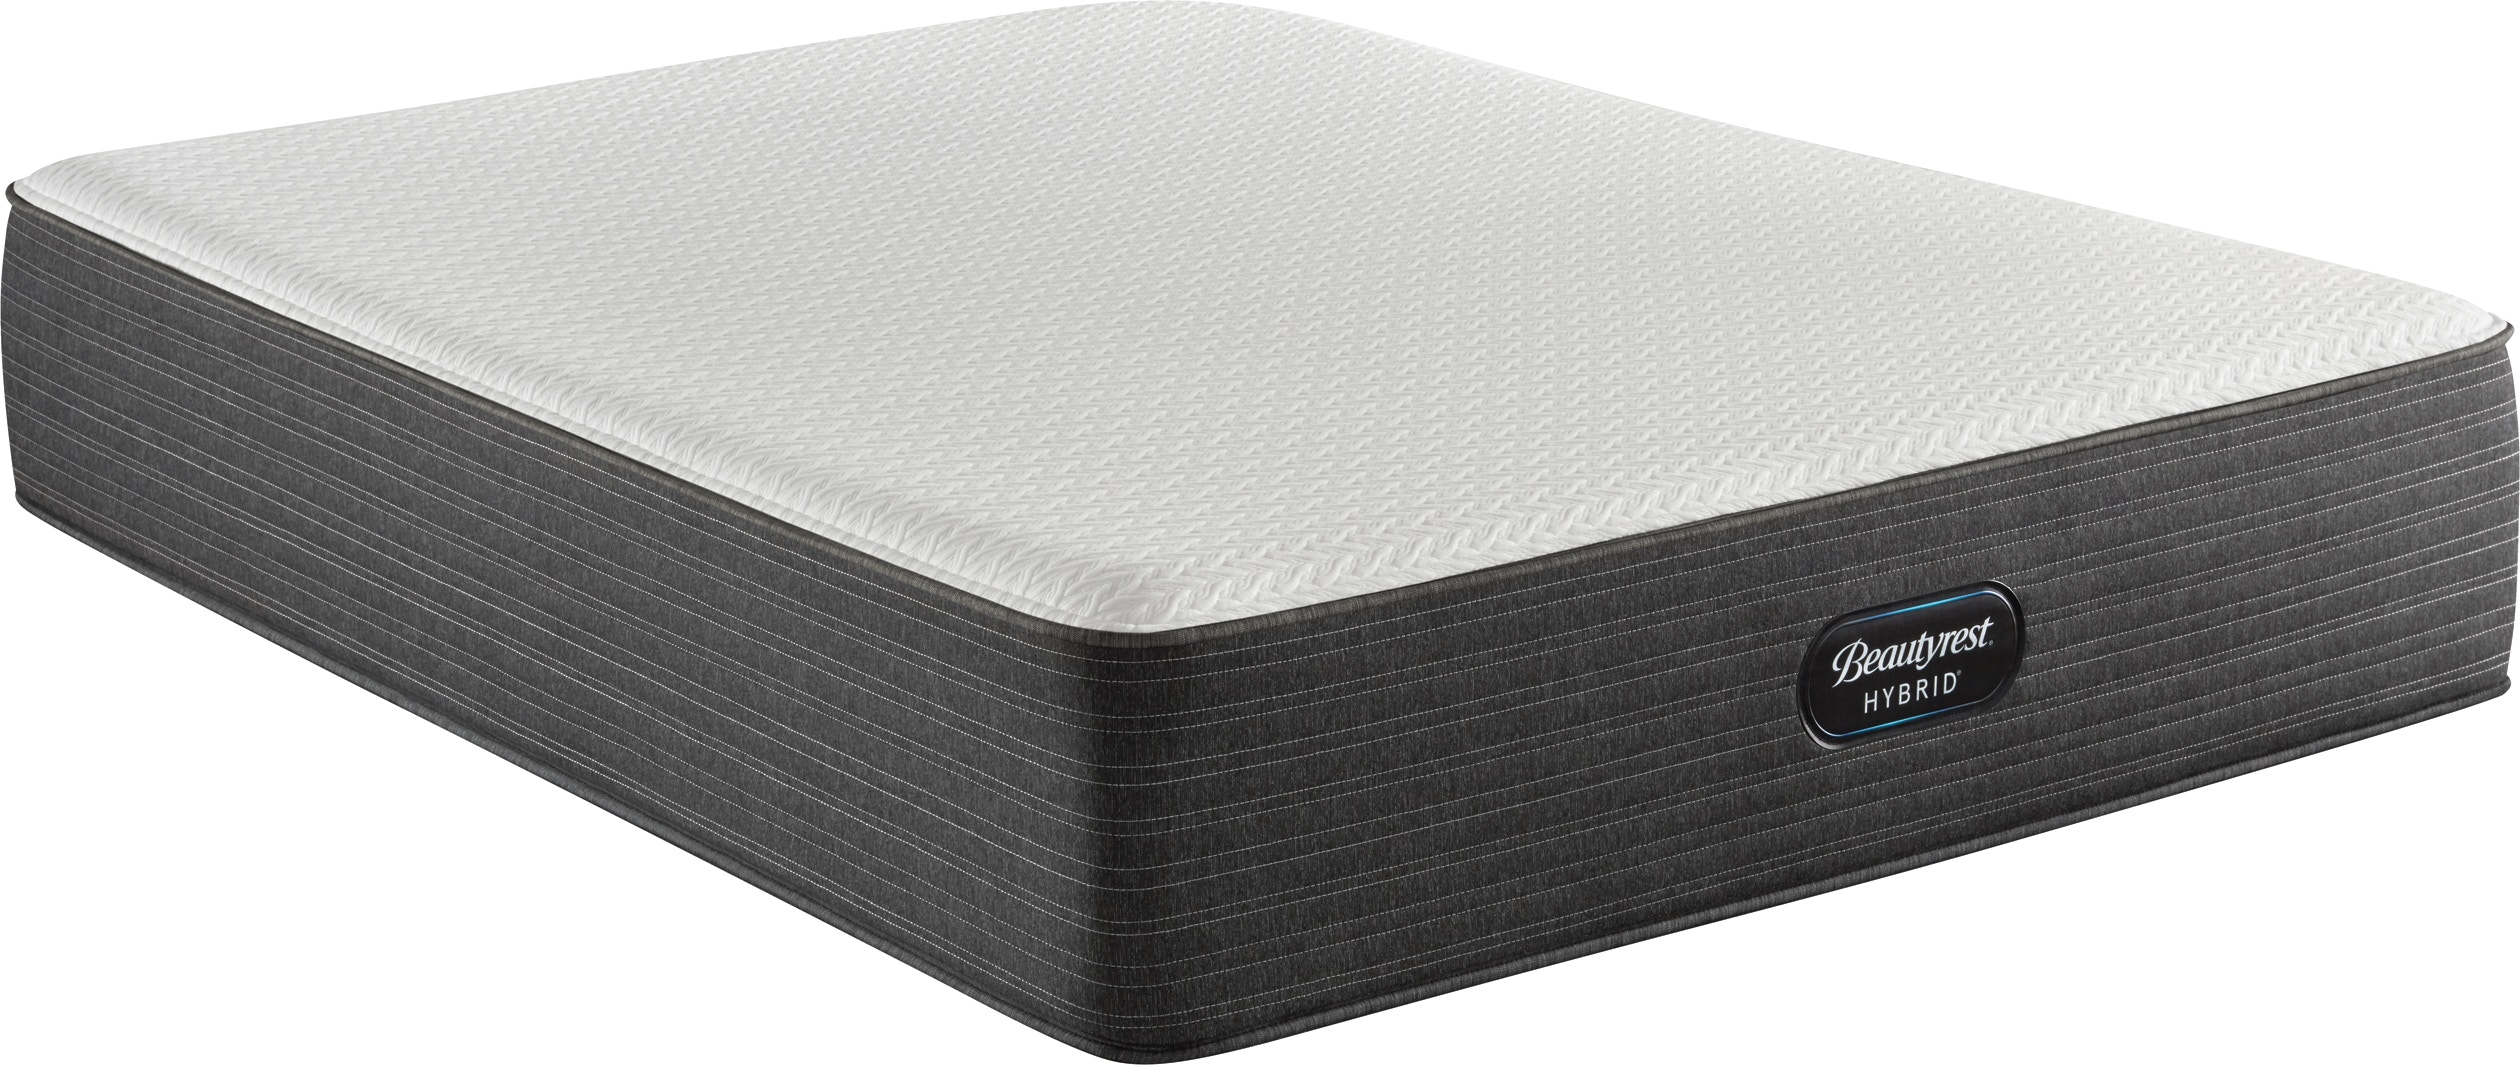 beautyrest hybrid 1000 infinicool plush cal king mattress